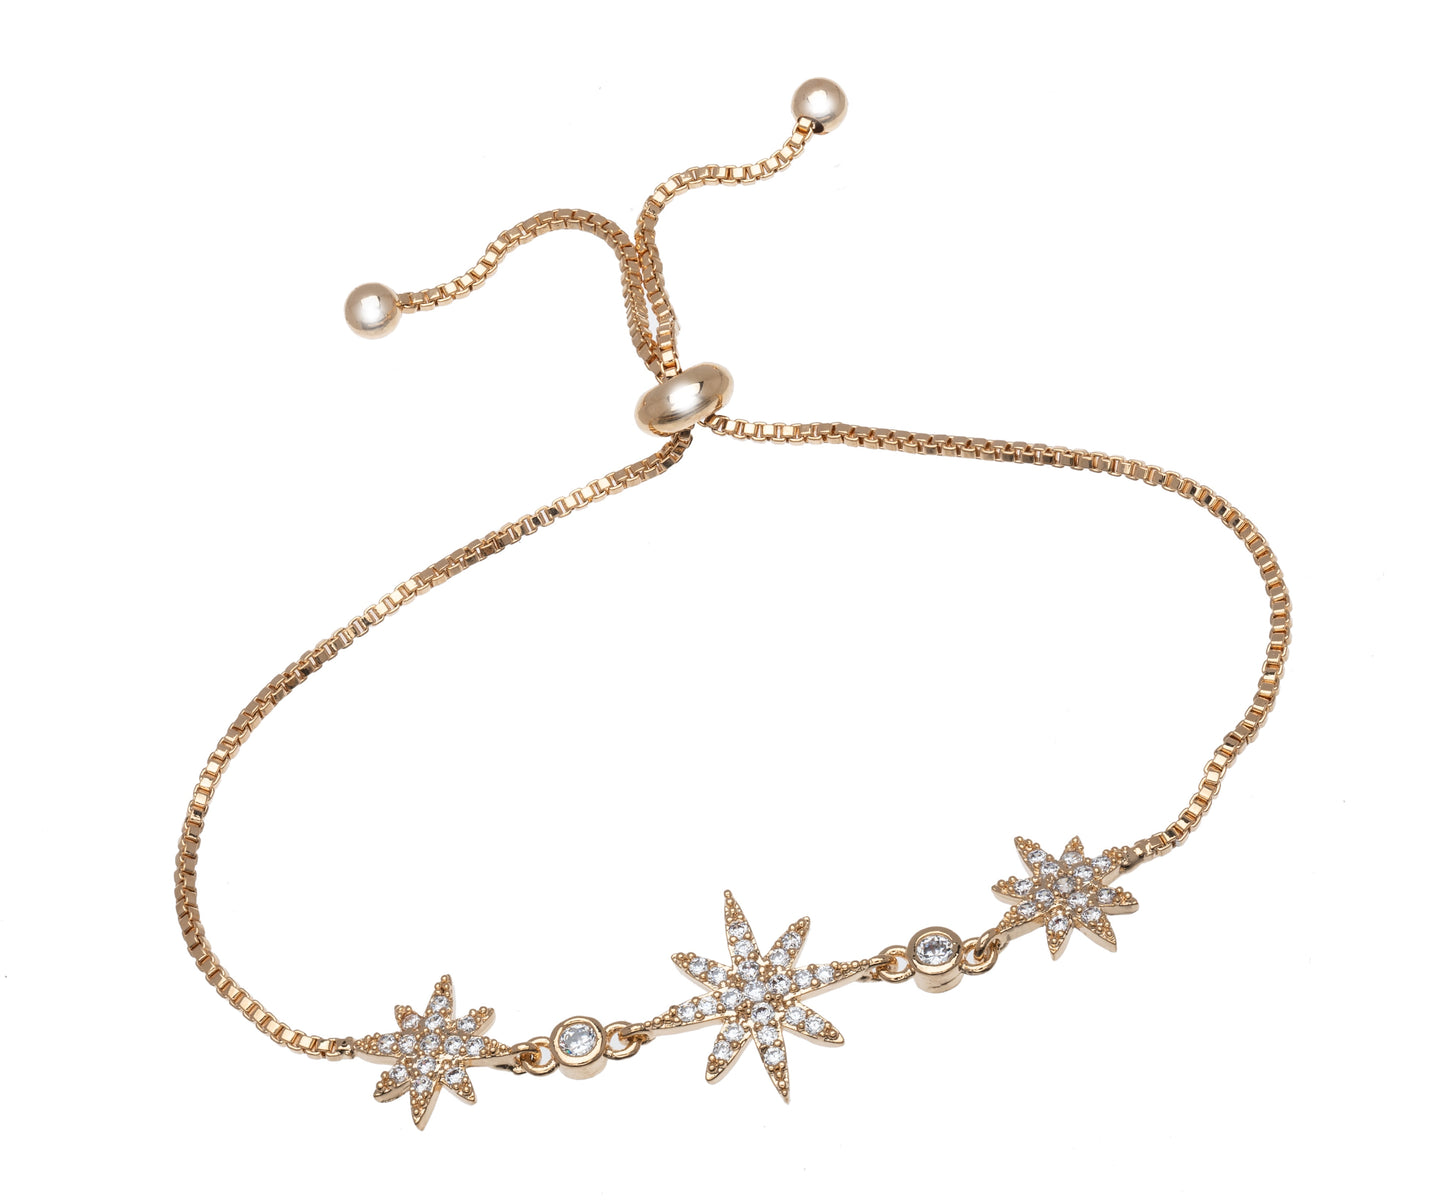 Crystal North Star Adjustable Bracelet